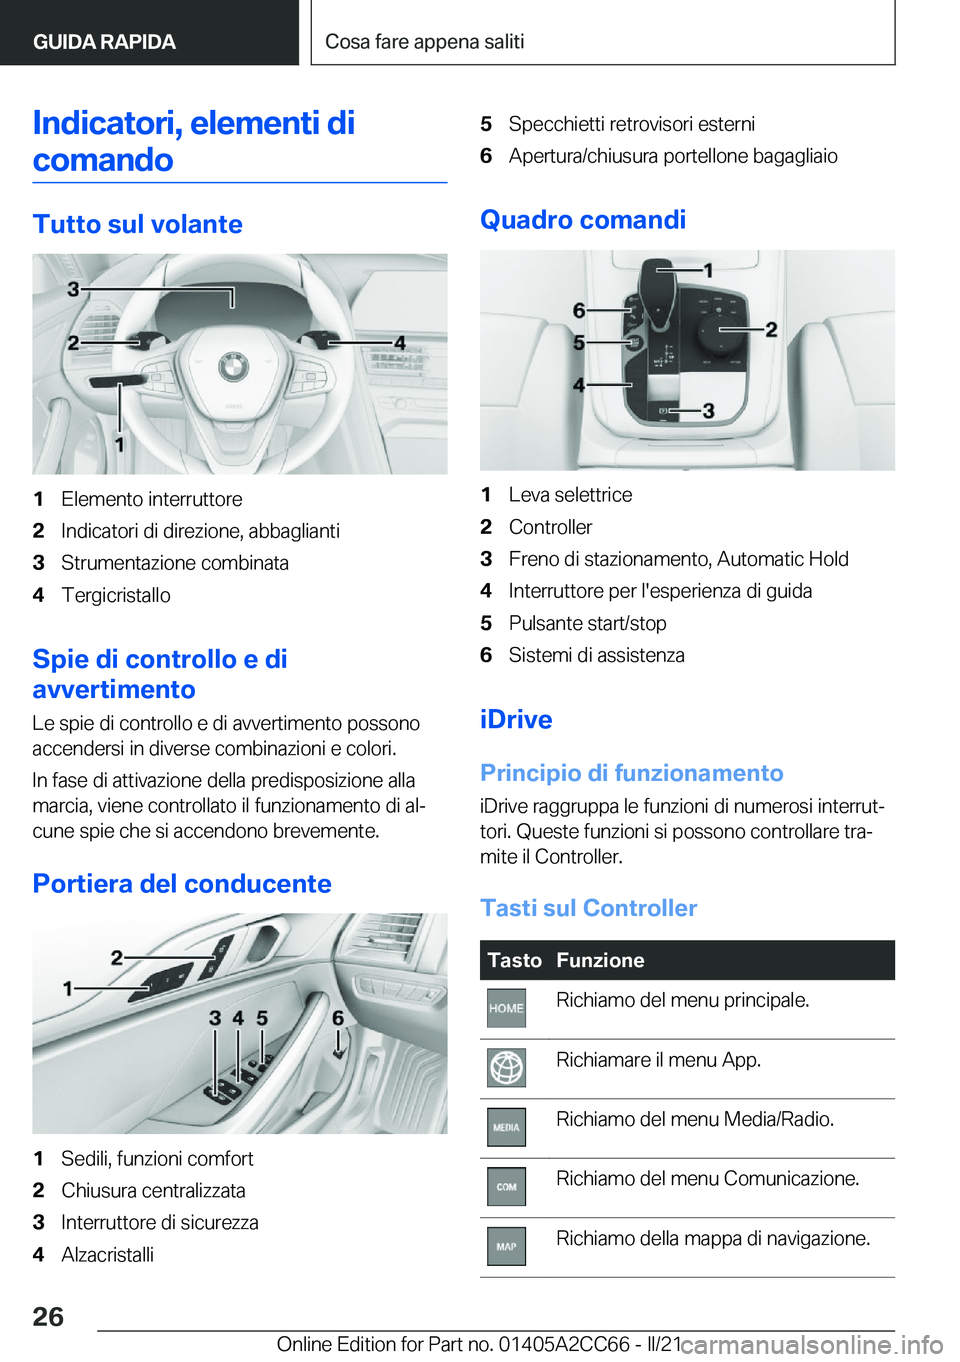 BMW 8 SERIES GRAN COUPE 2022  Libretti Di Uso E manutenzione (in Italian) �I�n�d�i�c�a�t�o�r�i�,��e�l�e�m�e�n�t�i��d�i�c�o�m�a�n�d�o
�T�u�t�t�o��s�u�l��v�o�l�a�n�t�e
�1�E�l�e�m�e�n�t�o��i�n�t�e�r�r�u�t�t�o�r�e�2�I�n�d�i�c�a�t�o�r�i��d�i��d�i�r�e�z�i�o�n�e�,��a�b�b�a